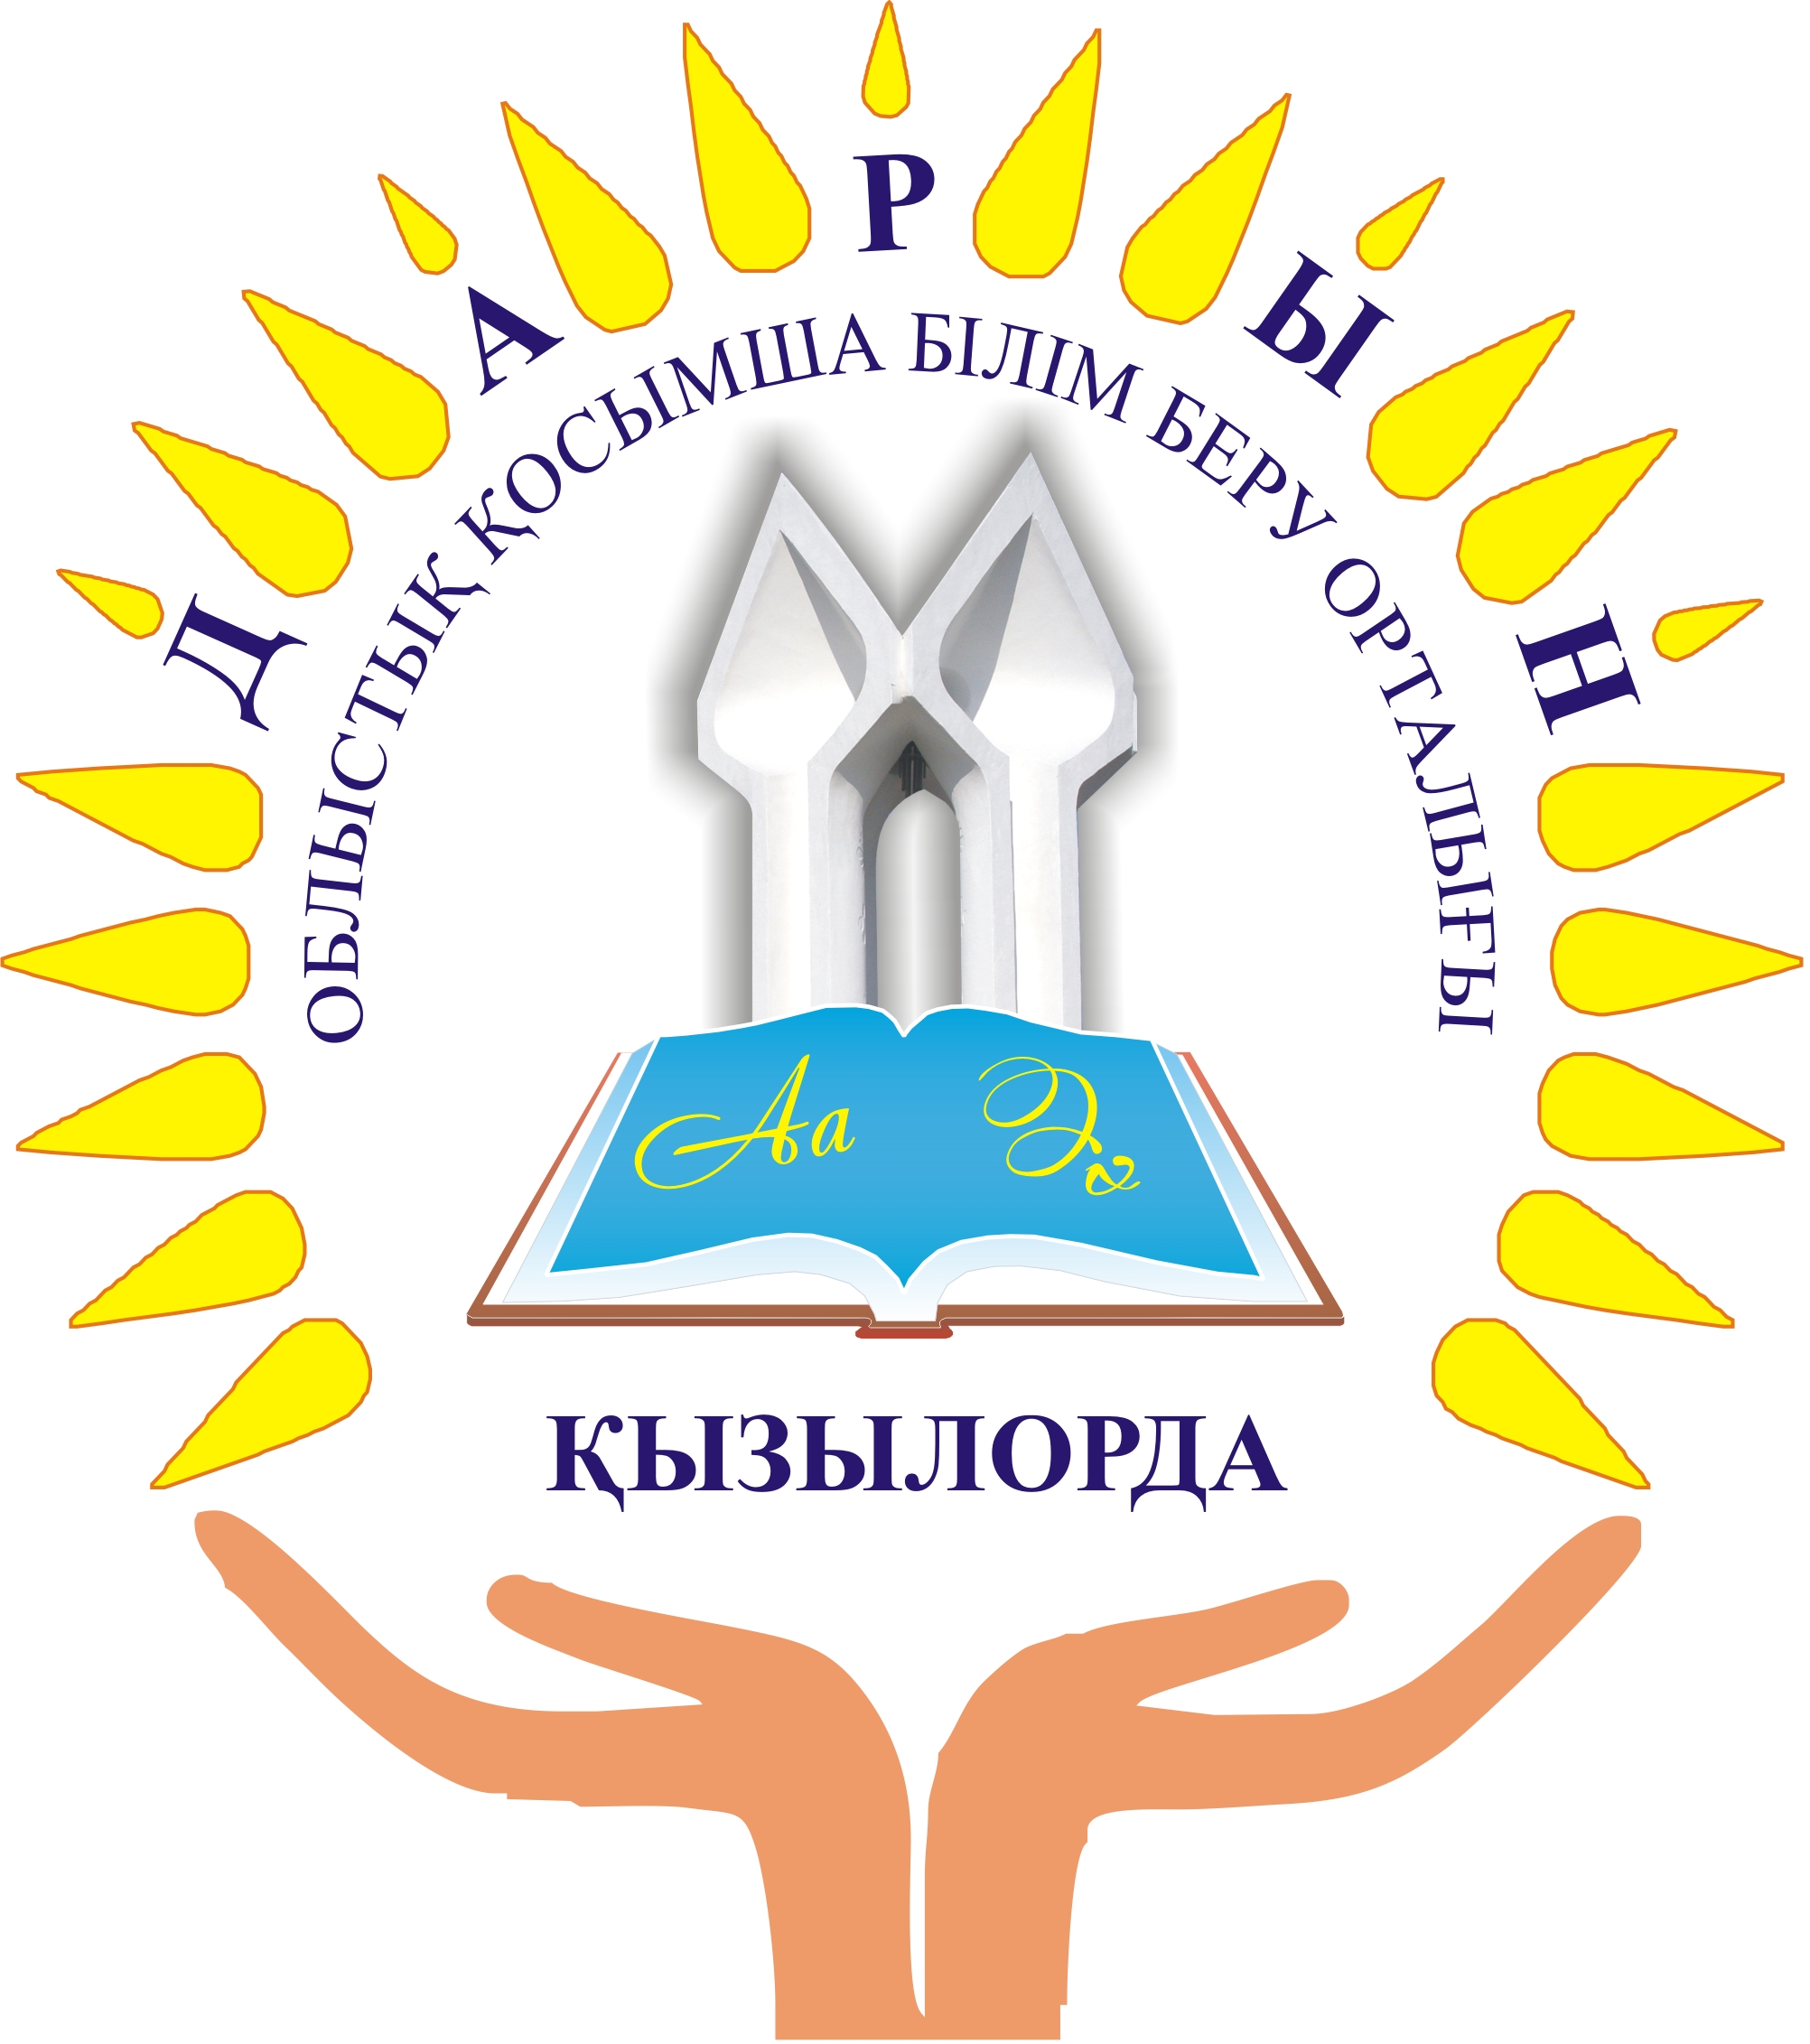 Дарын гейм. Дарын логотип. Центр Дарын. Кызылорда логотип. Астана дарыны логотип.